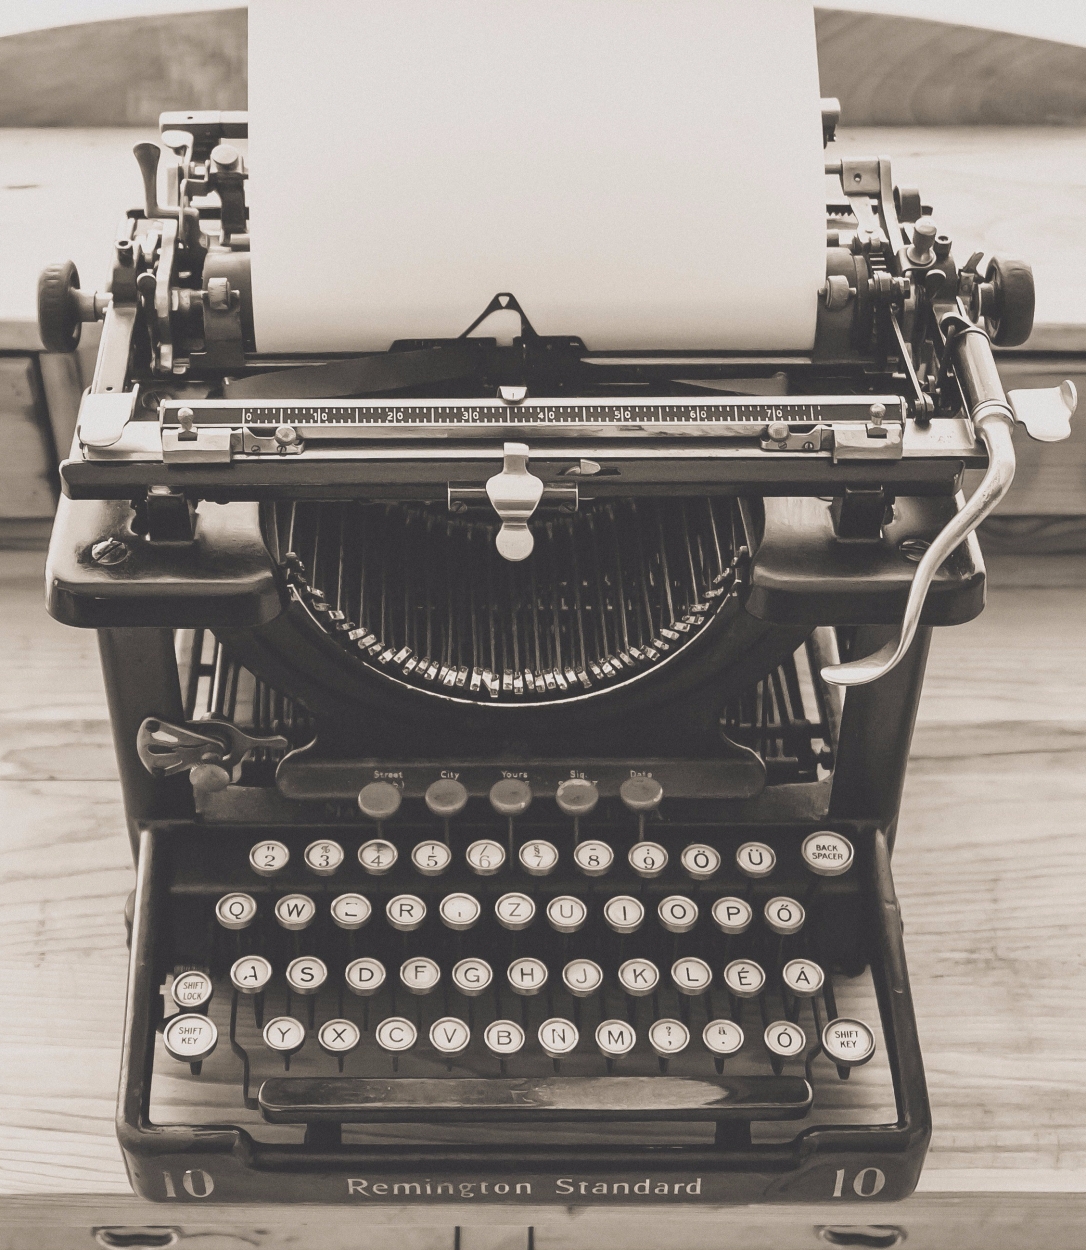 typewriter-